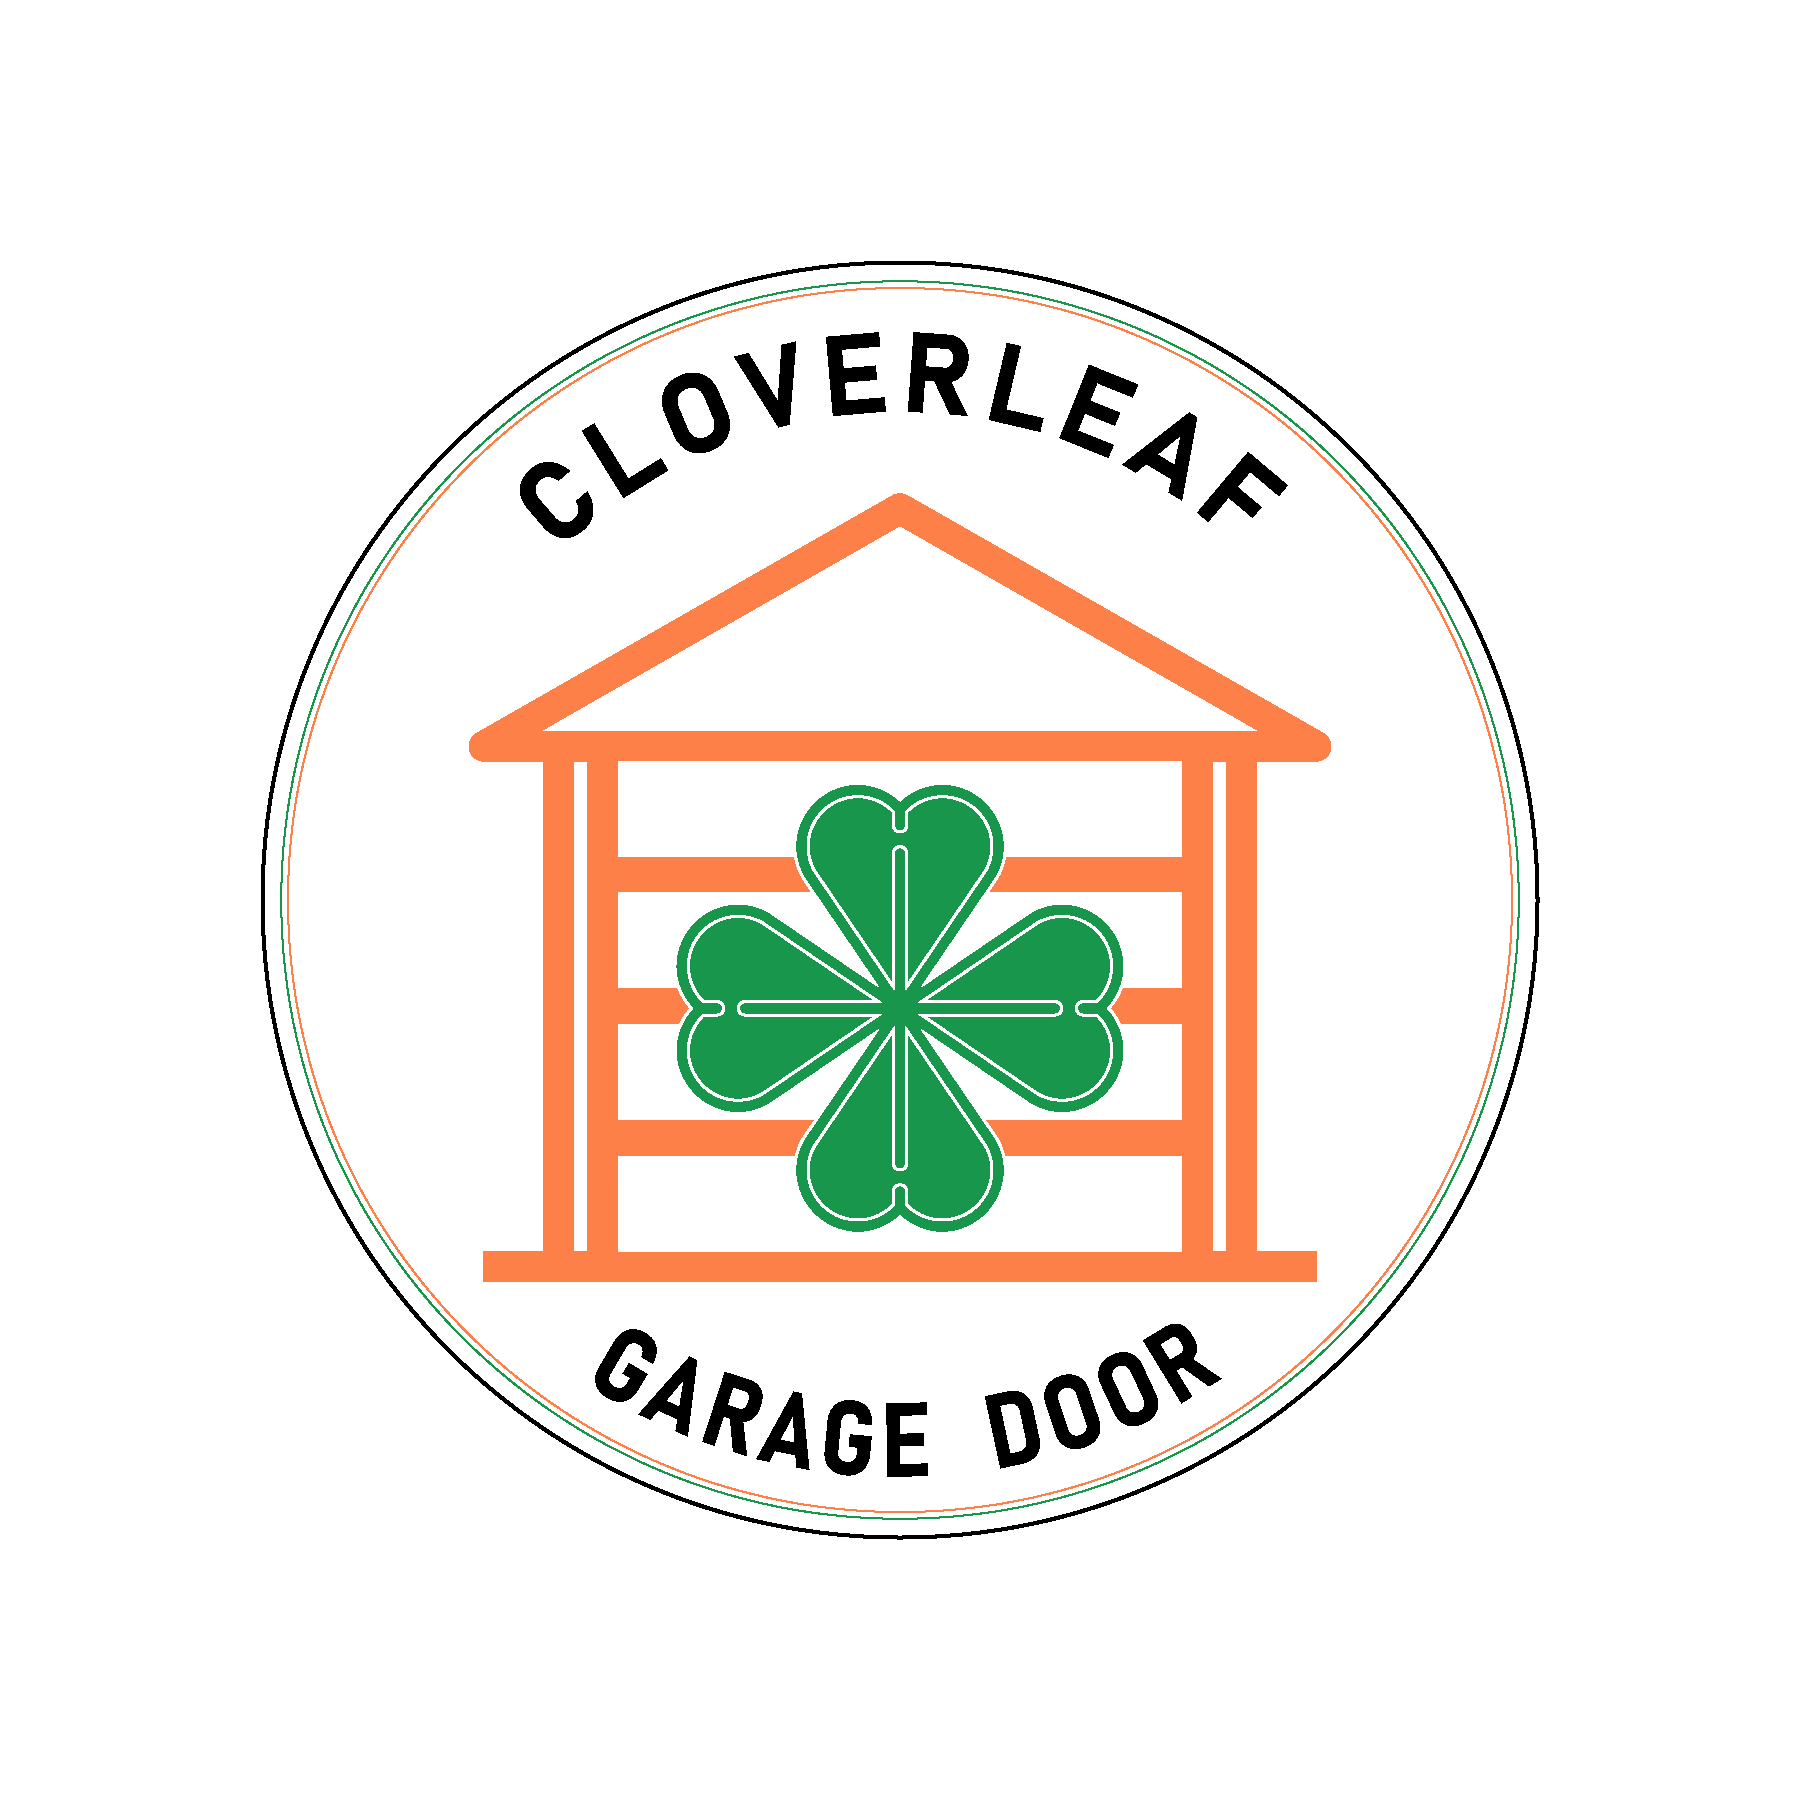 Cloverleaf Garage Door